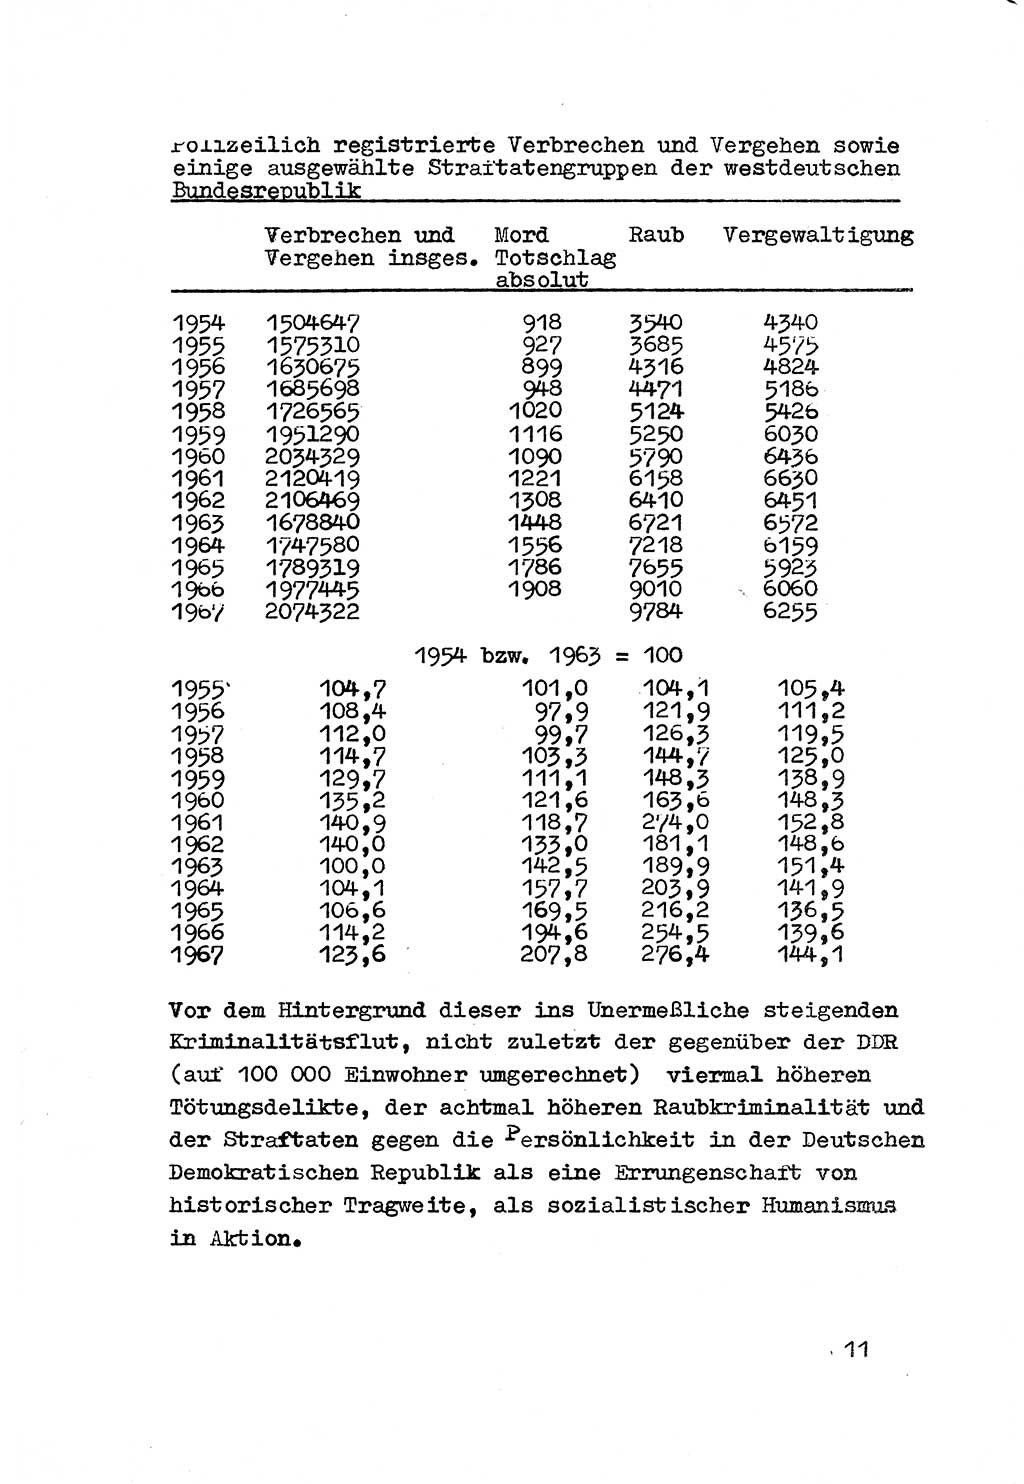 Strafrecht der DDR (Deutsche Demokratische Republik), Besonderer Teil, Lehrmaterial, Heft 3 1969, Seite 11 (Strafr. DDR BT Lehrmat. H. 3 1969, S. 11)